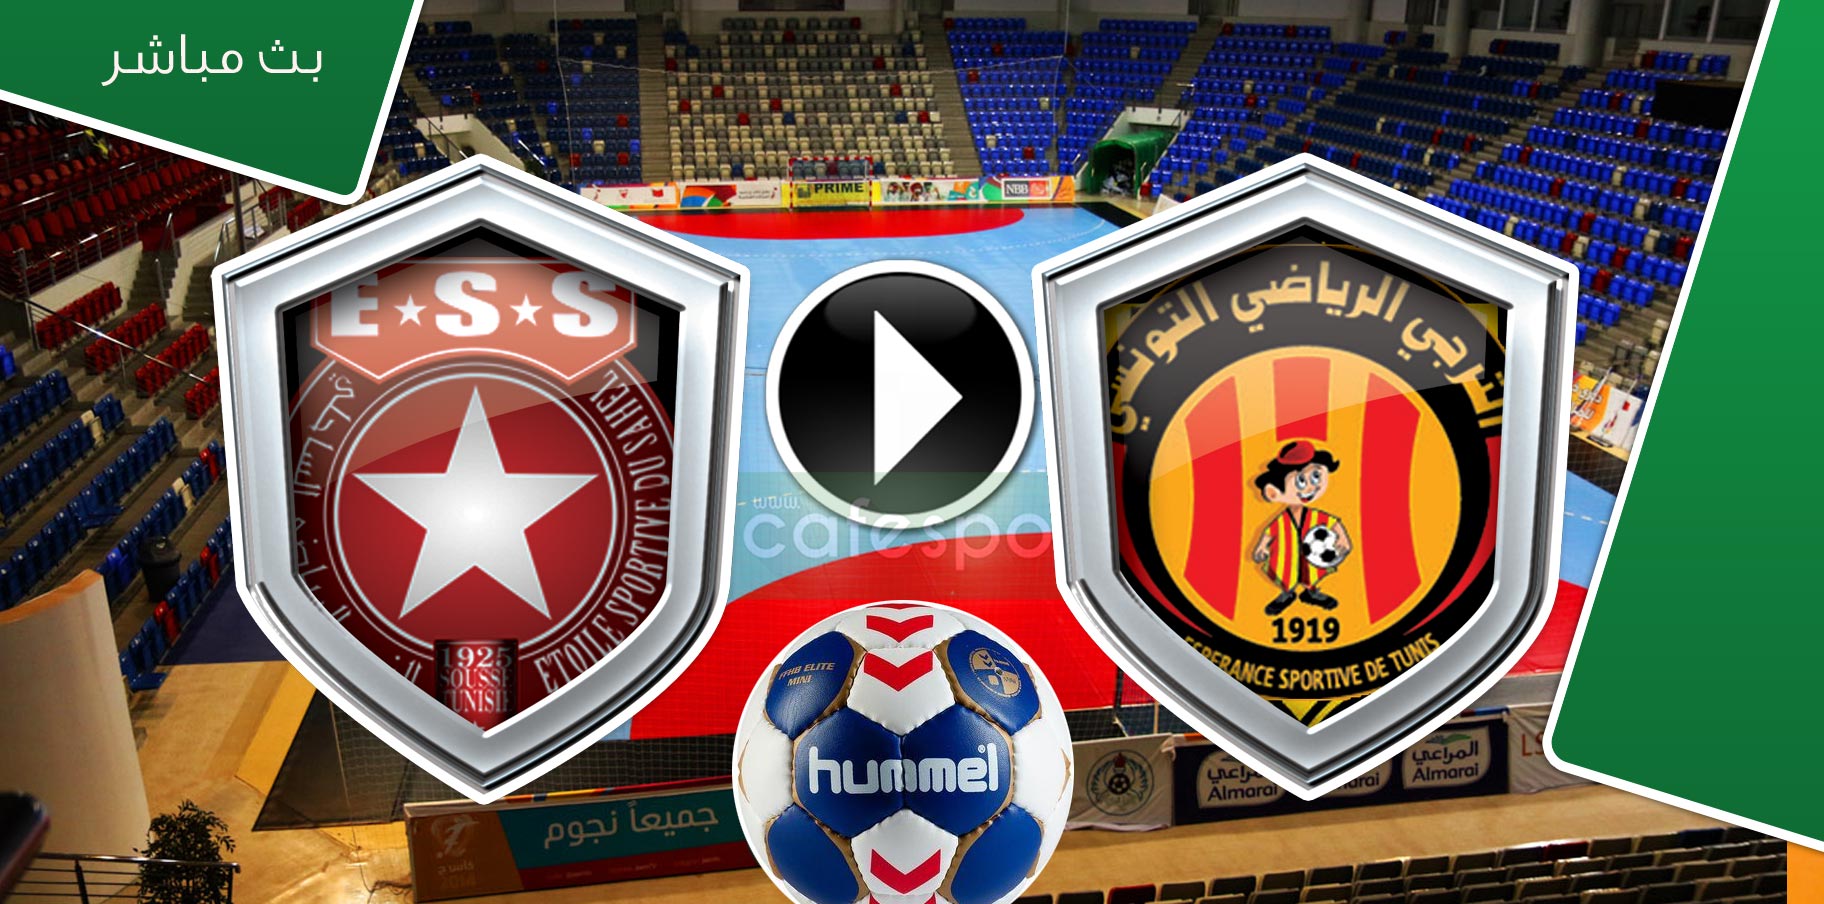 بث مباشر لمباراة كرة اليد النجم الساحلي – الترجي الرياضي التونسي